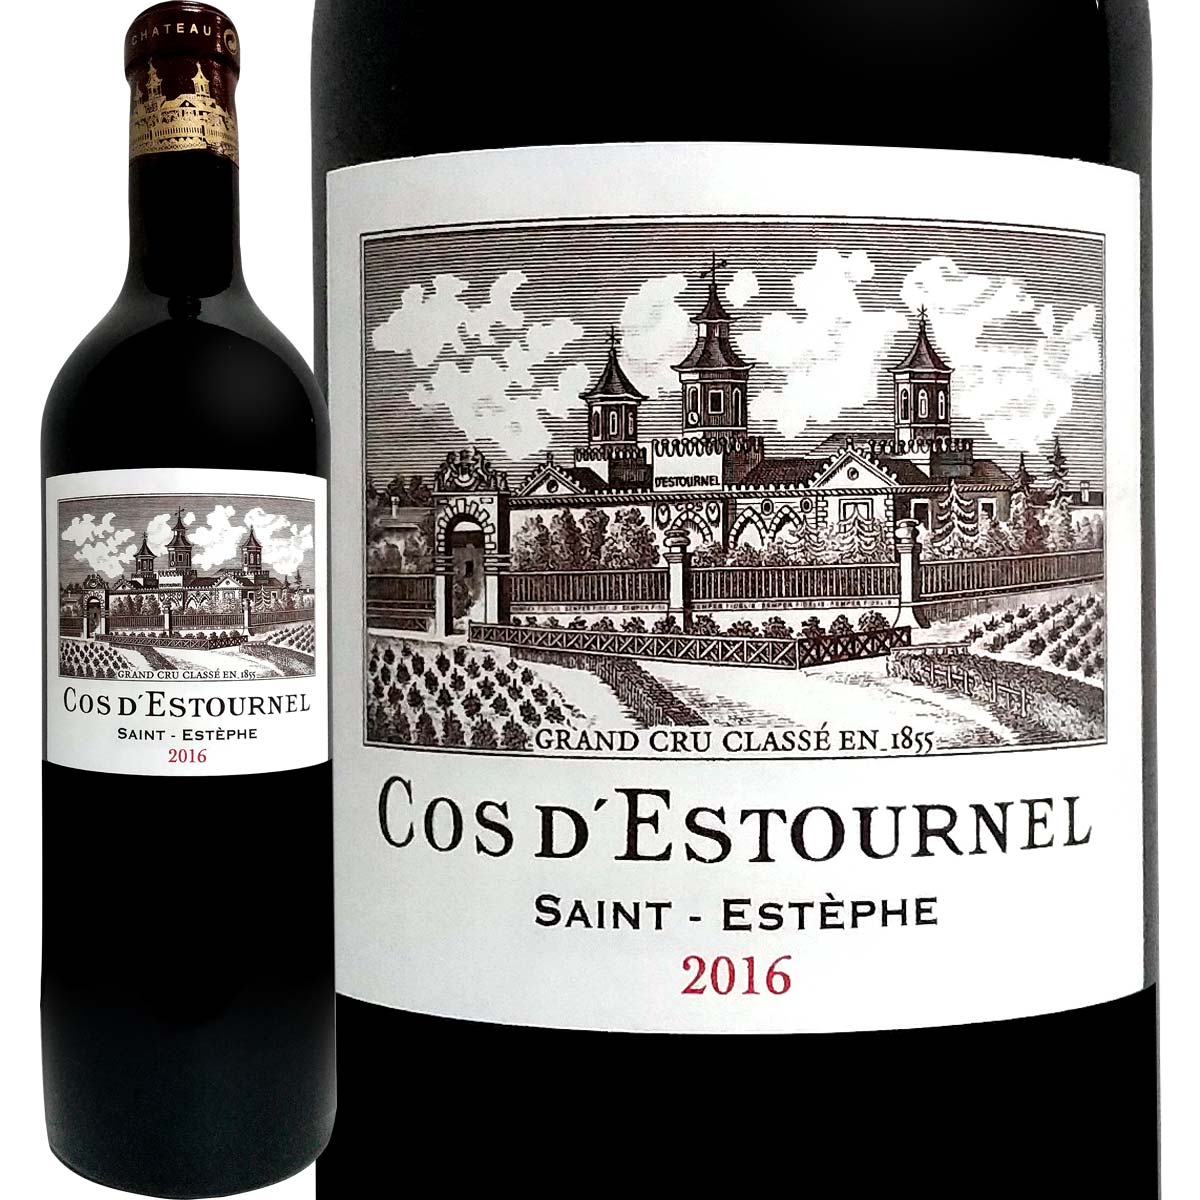 シャトー・コス・デストゥルネル 2016フランス 赤ワイン 750ml ミディアムボディ寄りのフルボディ 辛口